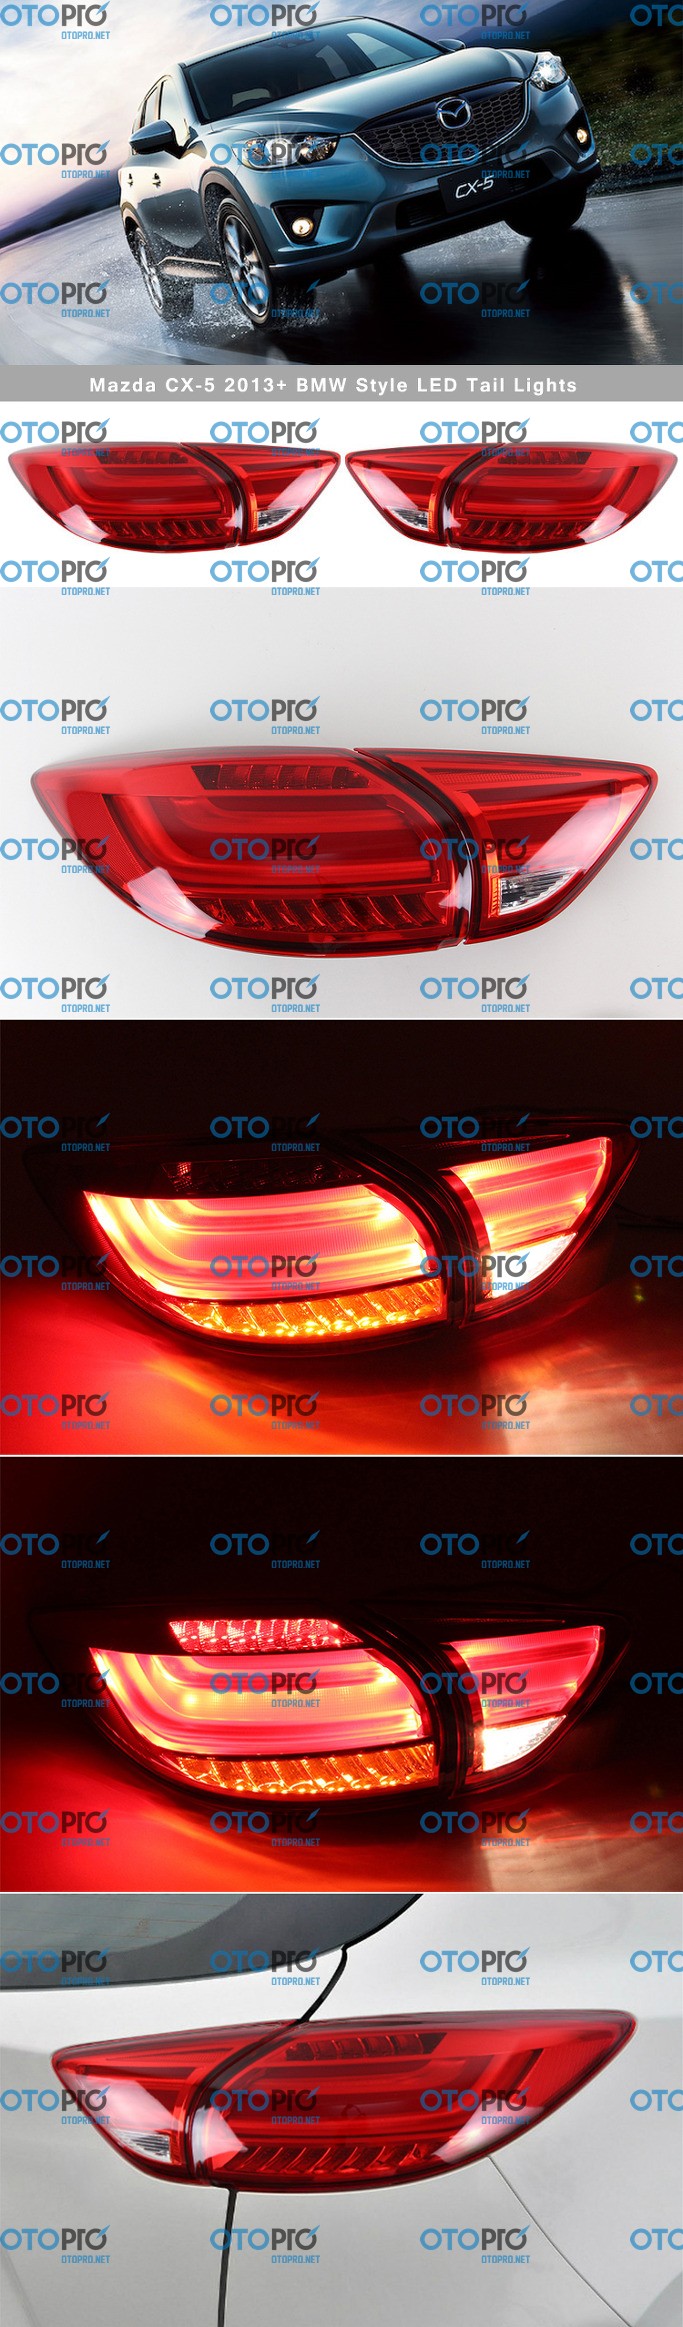 Đèn hậu độ LED nguyên bộ cho xe Mazda CX 5